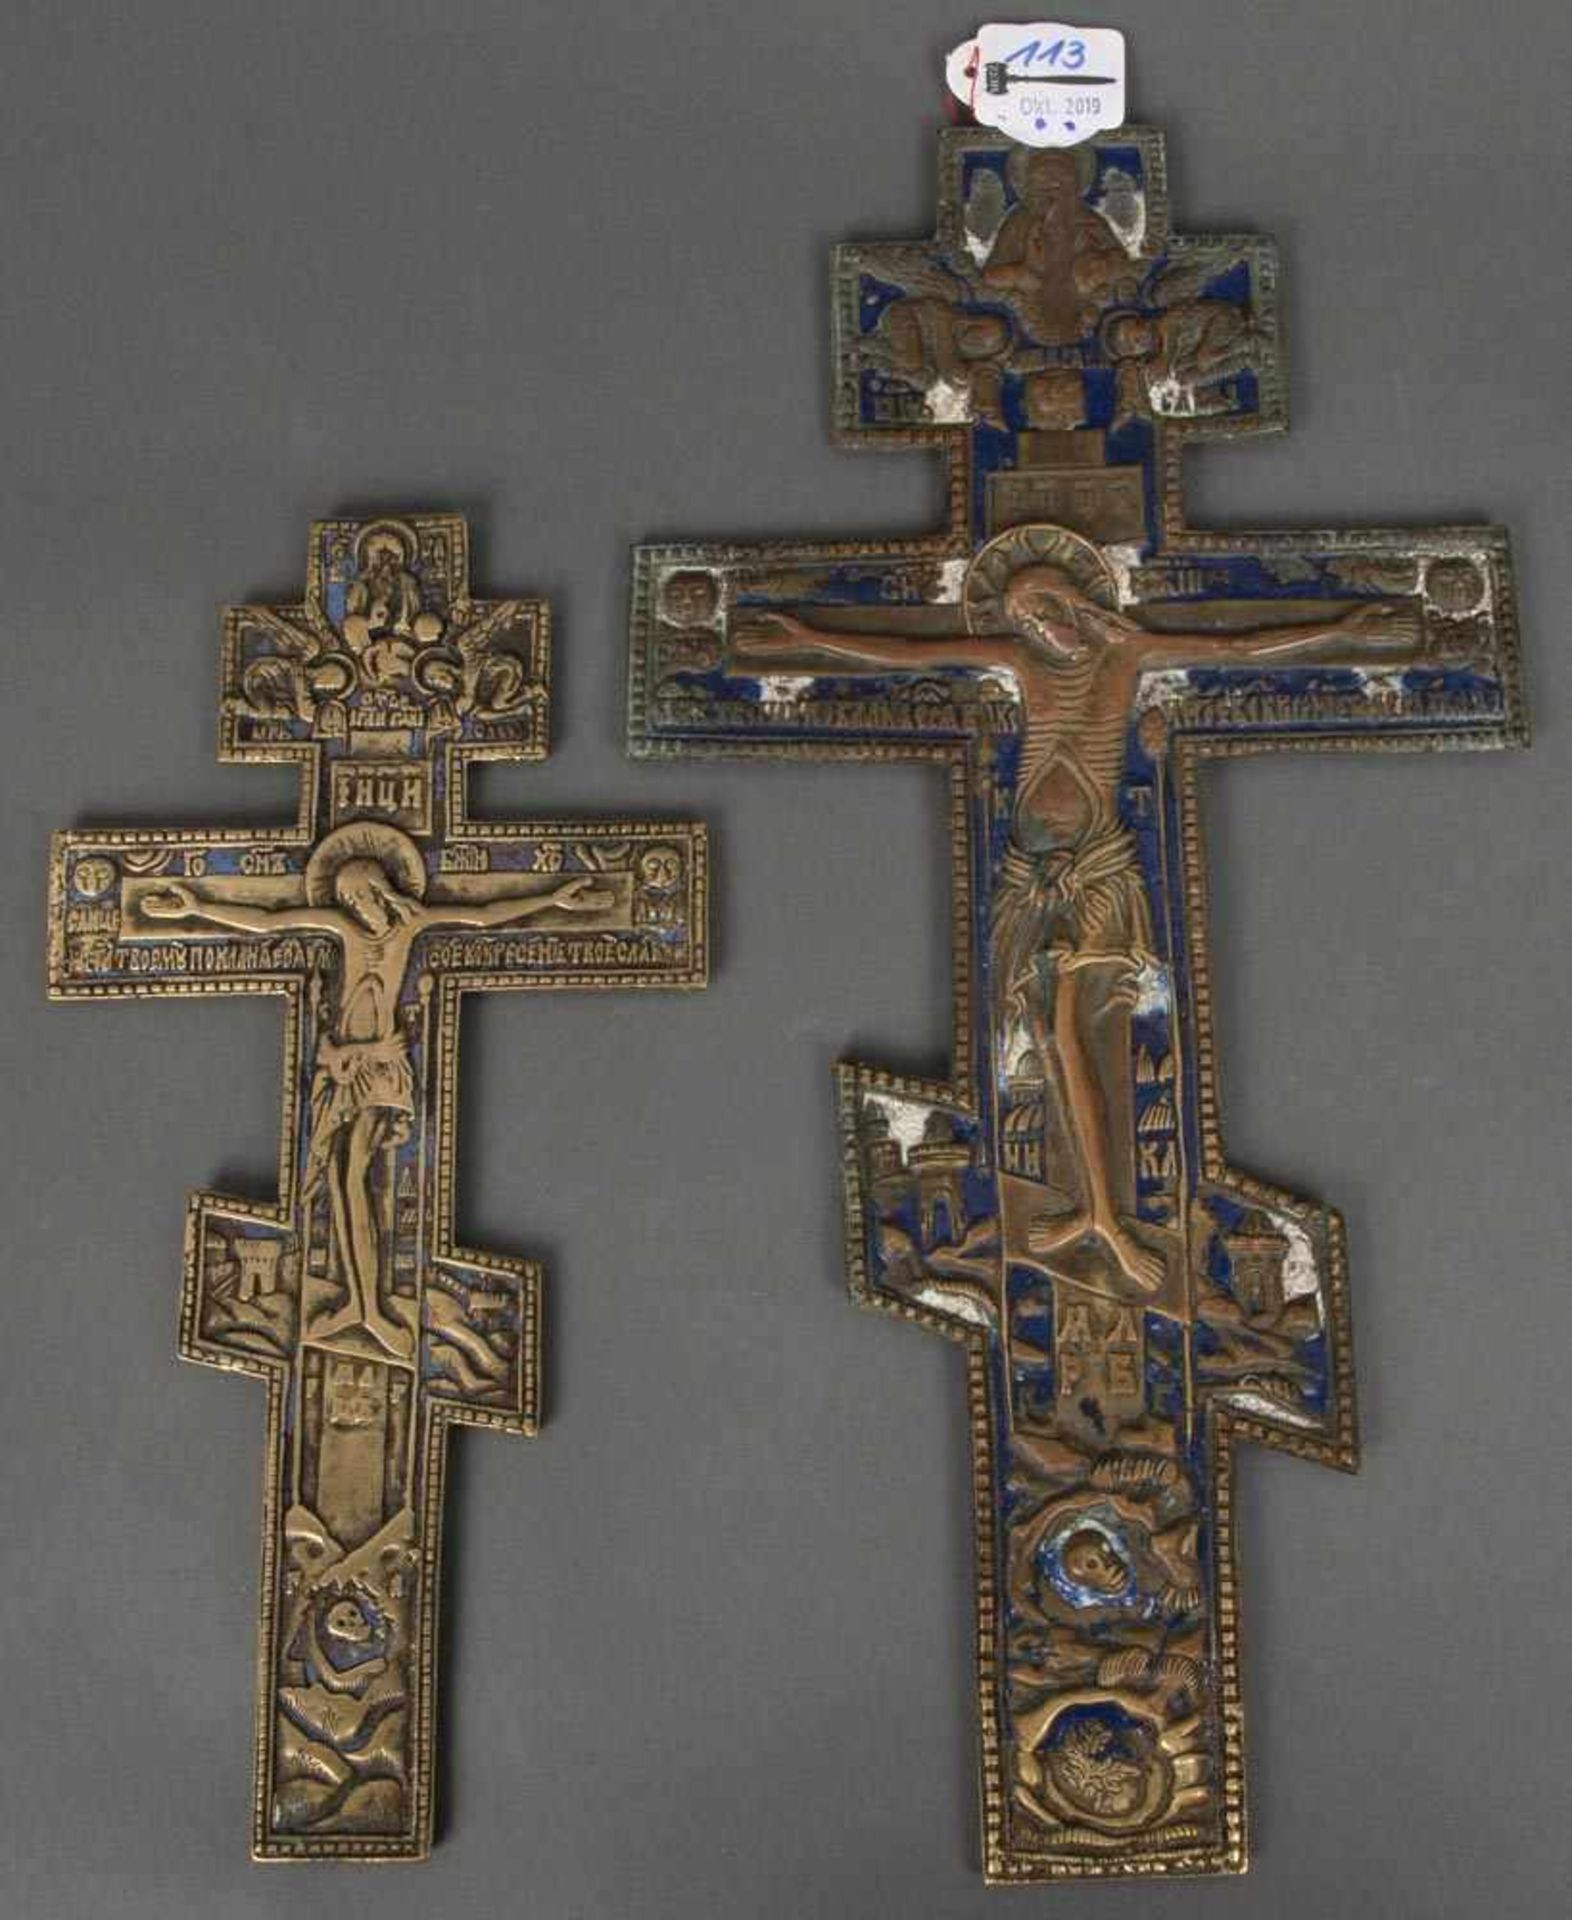 Zwei Kruzifixe. Russland 19. Jh. Bronze, bunt emailliert, H=27 / 36 cm.- - -25.00 % buyer's